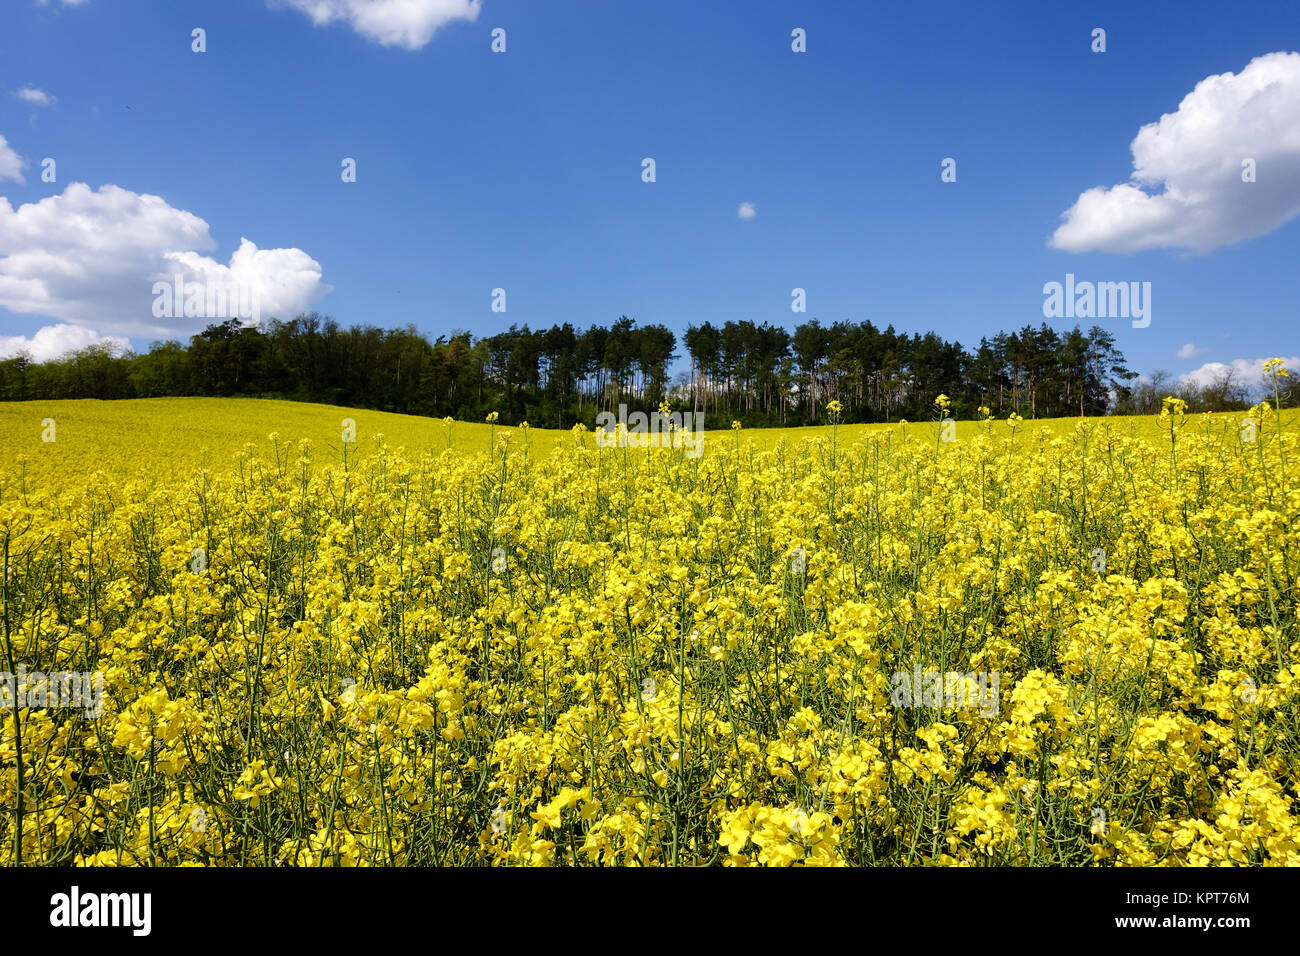 Landschaft mit gelbem Rapsfeld, landwirtschaftlicher Anbau von Rapspflanze Stock Photo